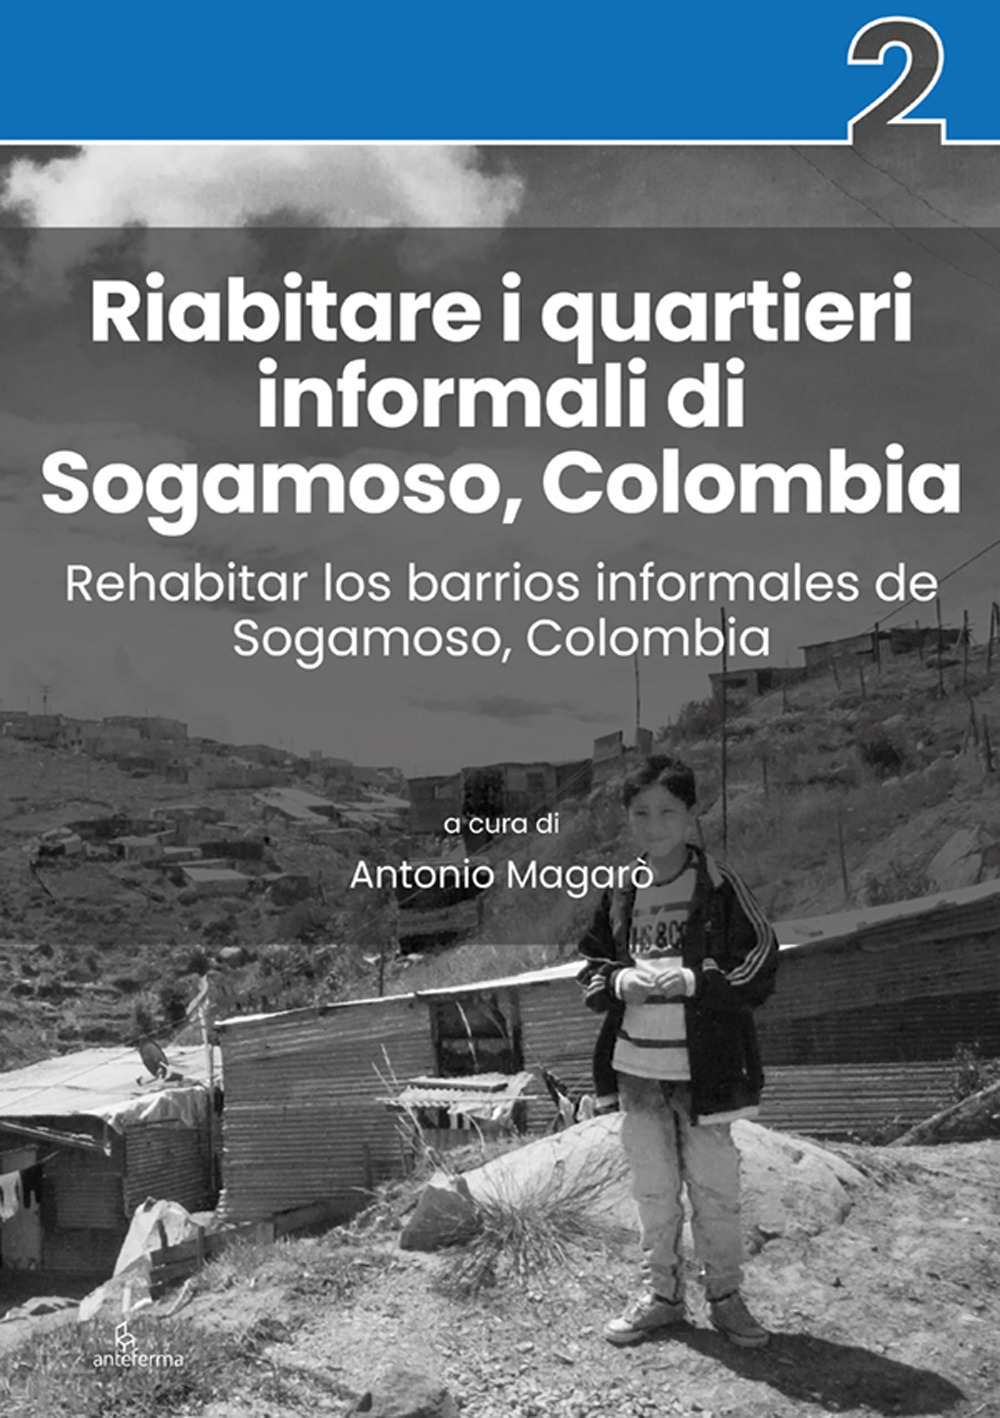 Riabitare i quartieri informali di Sogamoso, Colombia-Rehabitar los barrios informales de Sogamoso, Colombia. Ediz. illustrata